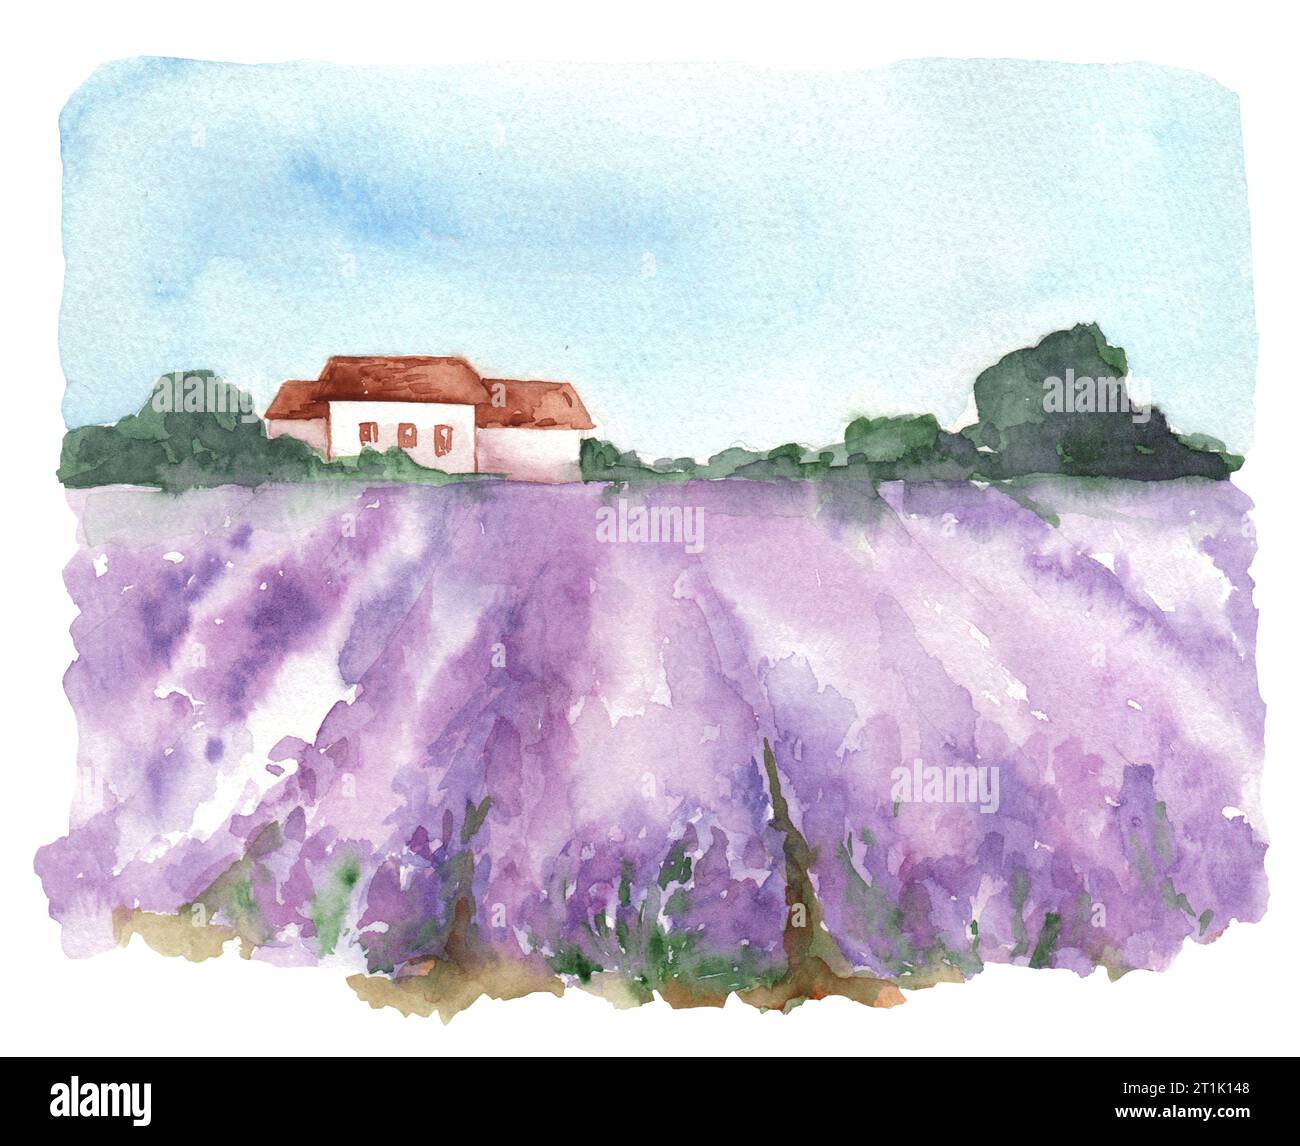 Illustration à l'aquarelle de beaux champs de lavande. Peinture de paysage avec des collines, des maisons, des plantes, des arbres, des rangées de fleurs de lavande, des terres agricoles et bl Banque D'Images